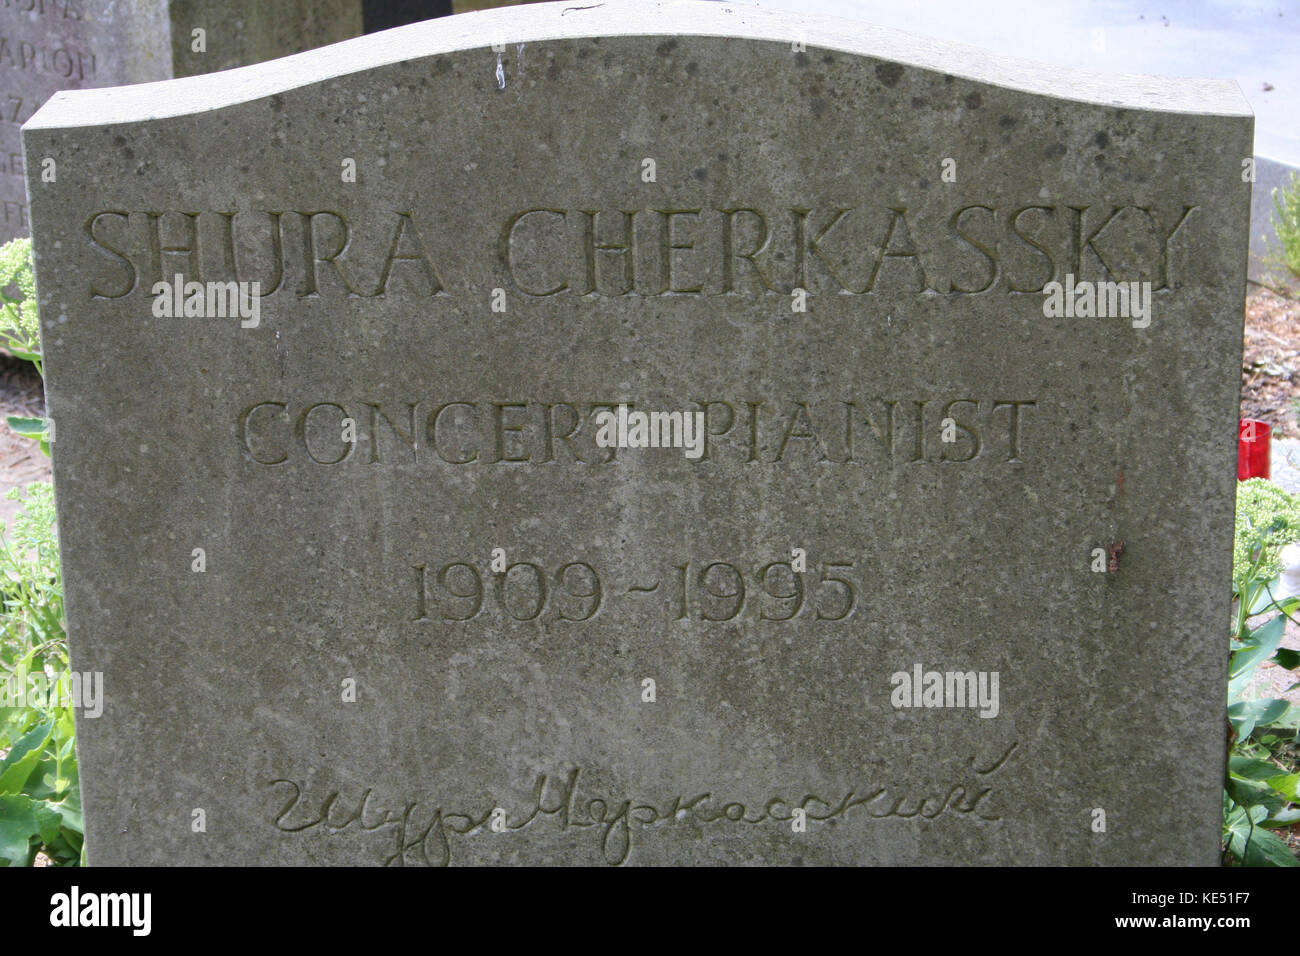 Shura Cherkassky 's gravestone at Highgate Cemetery 7 October  1909 - 27 December  1995 Stock Photo